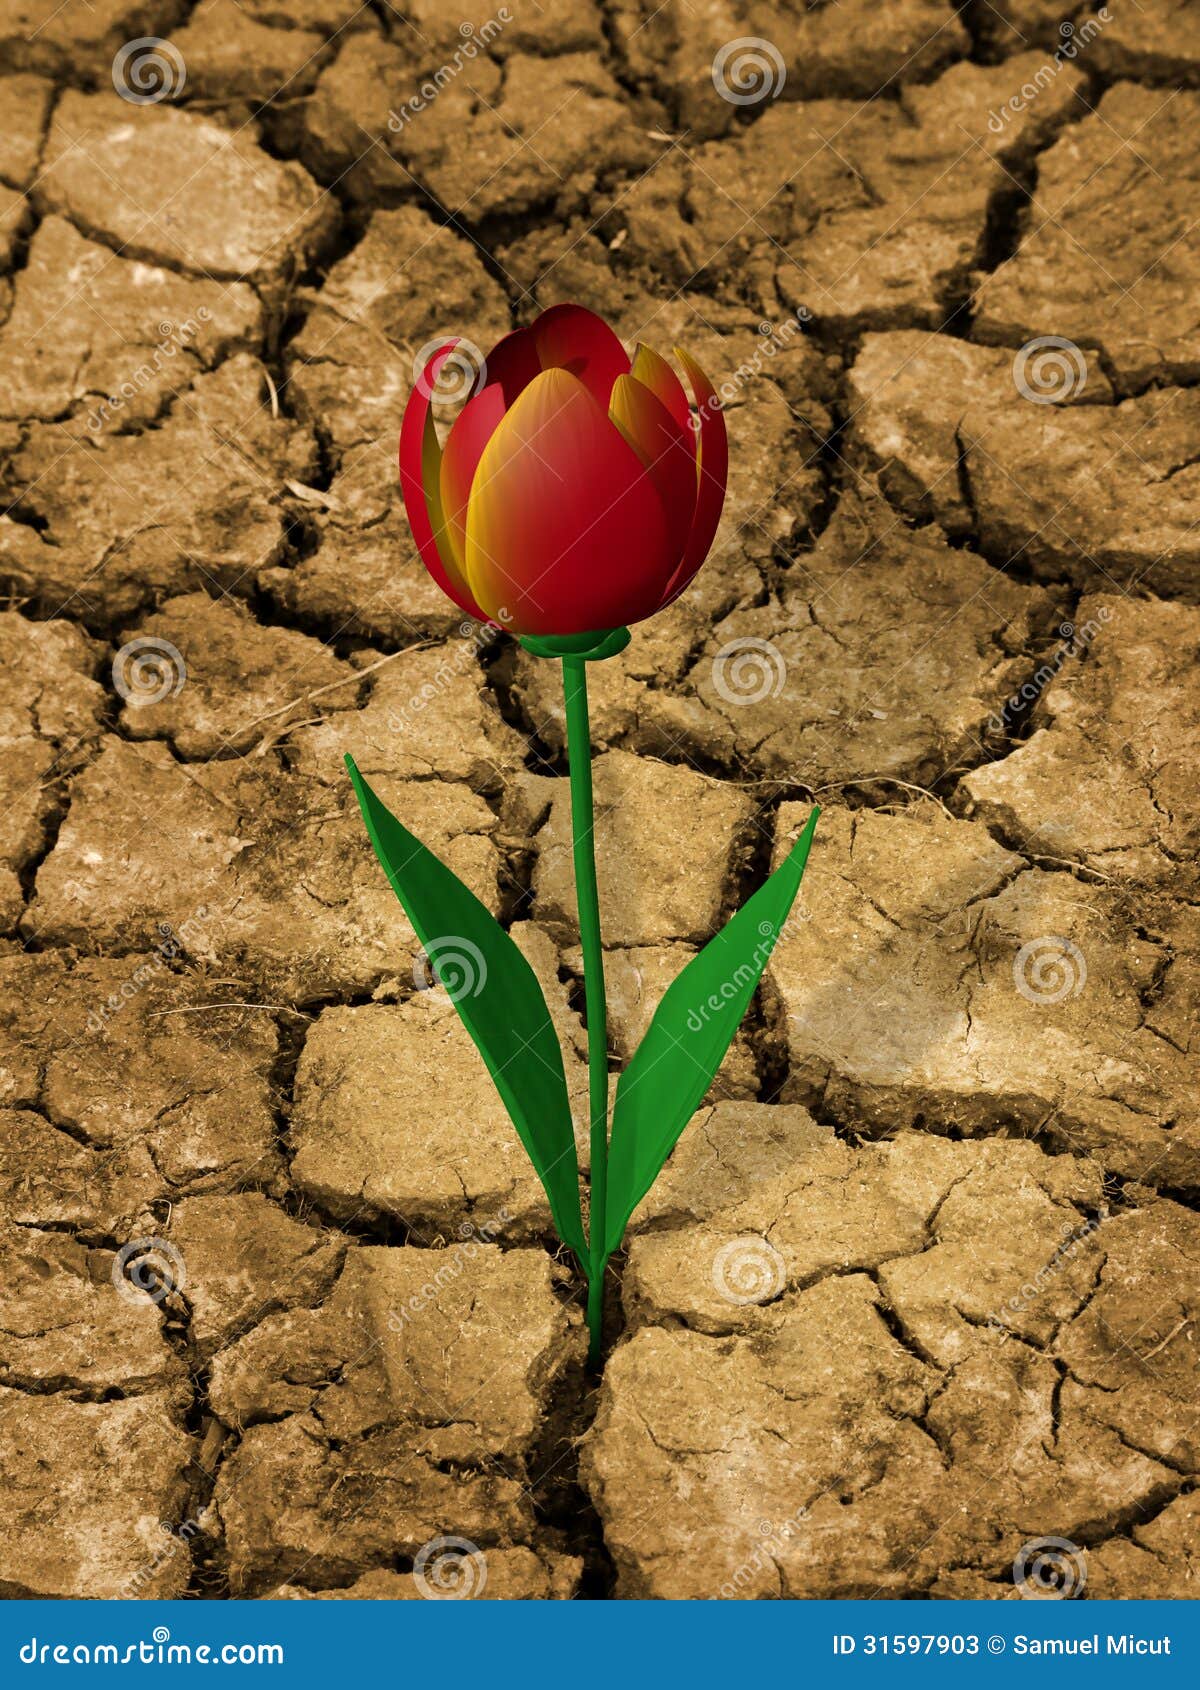 drought-resistant flower